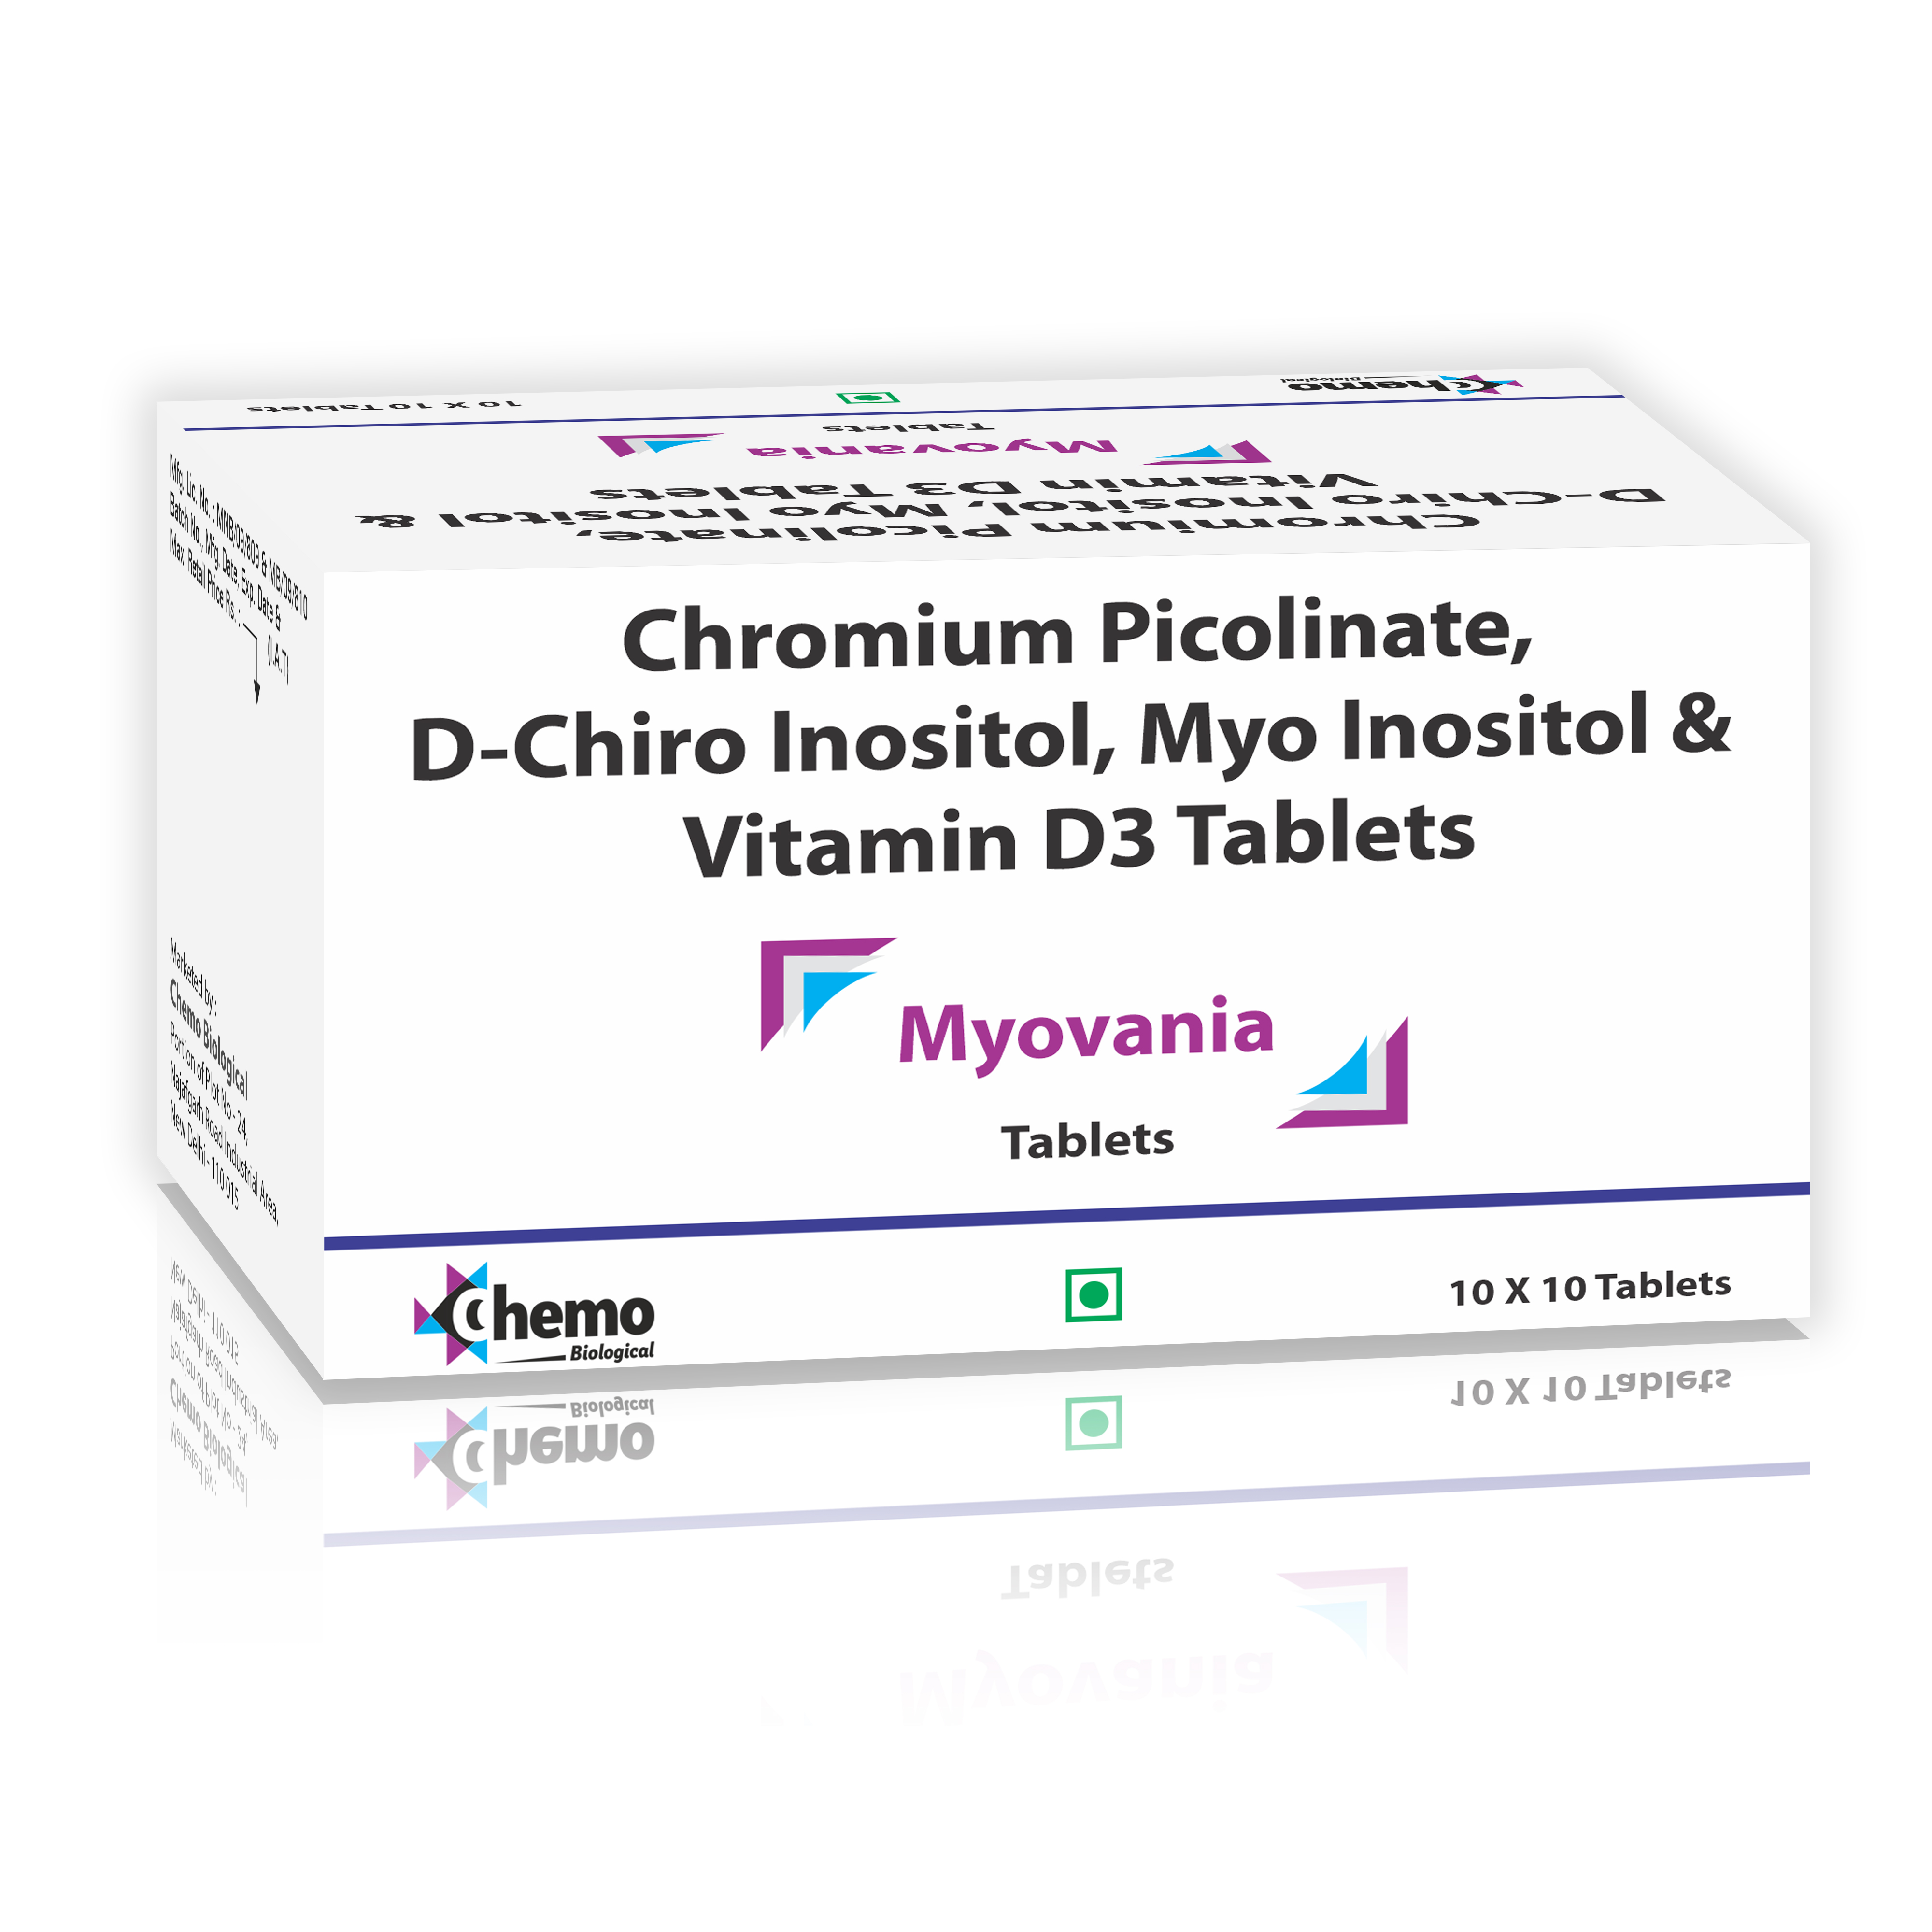 myo inositol 550mg +d-chiro inositol 13.8mg + chromium picolinate
100mcg  + vitamin d3 200 iu